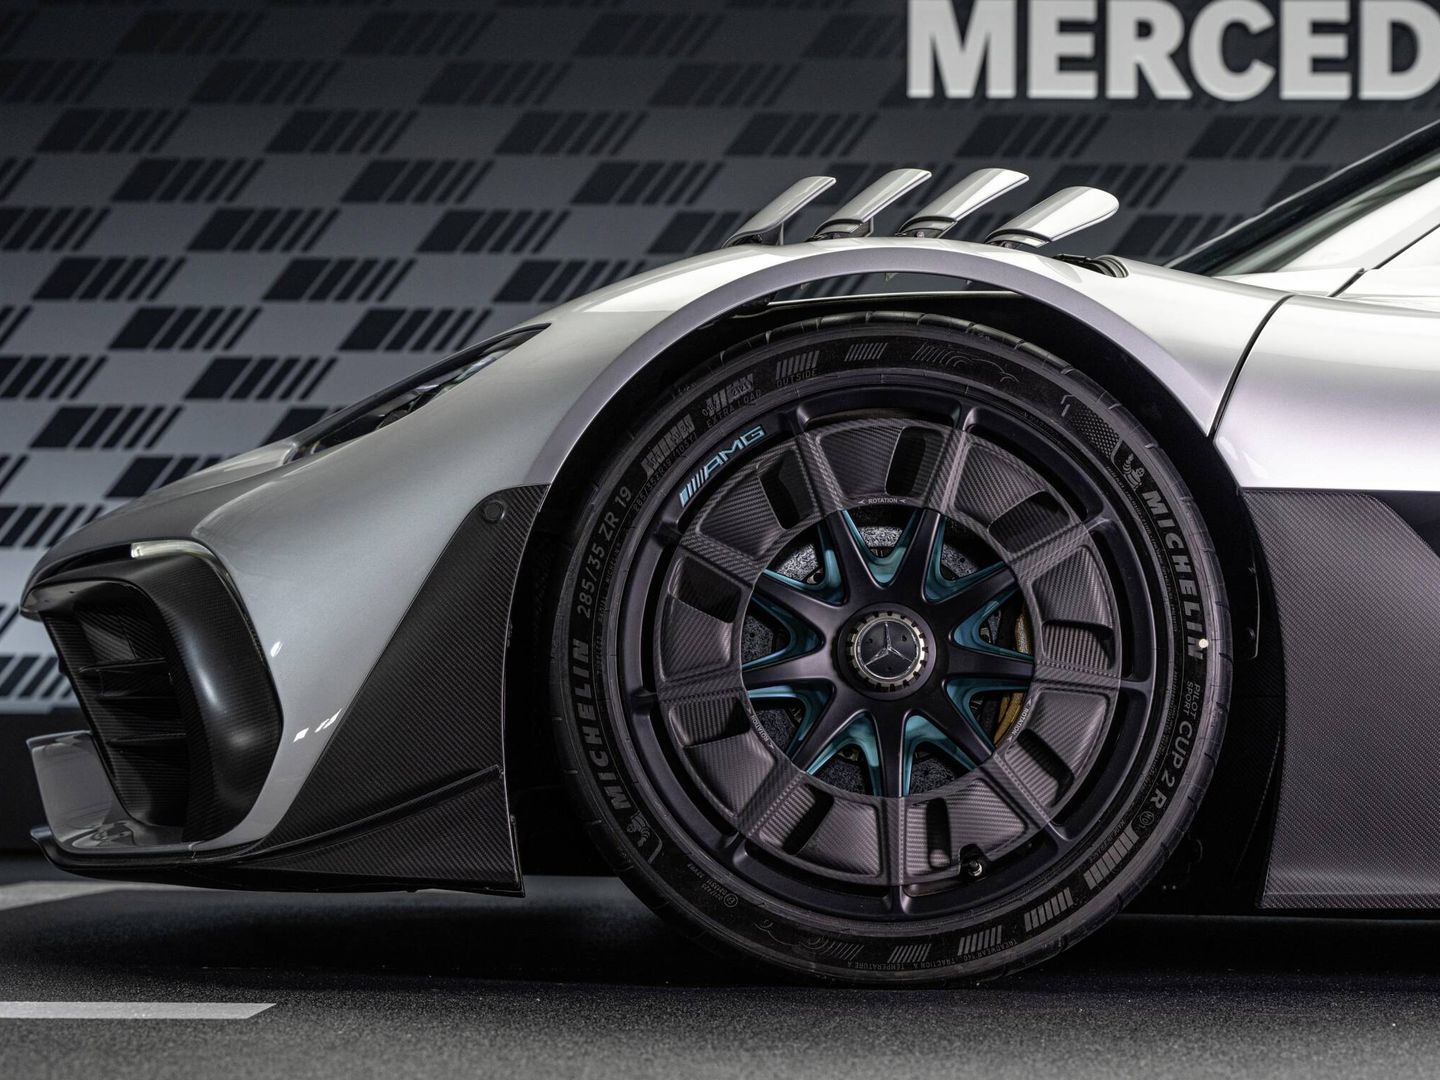 Las llantas de diseño aerodinámico montan neumáticos Michelin desarrollados específicamente.